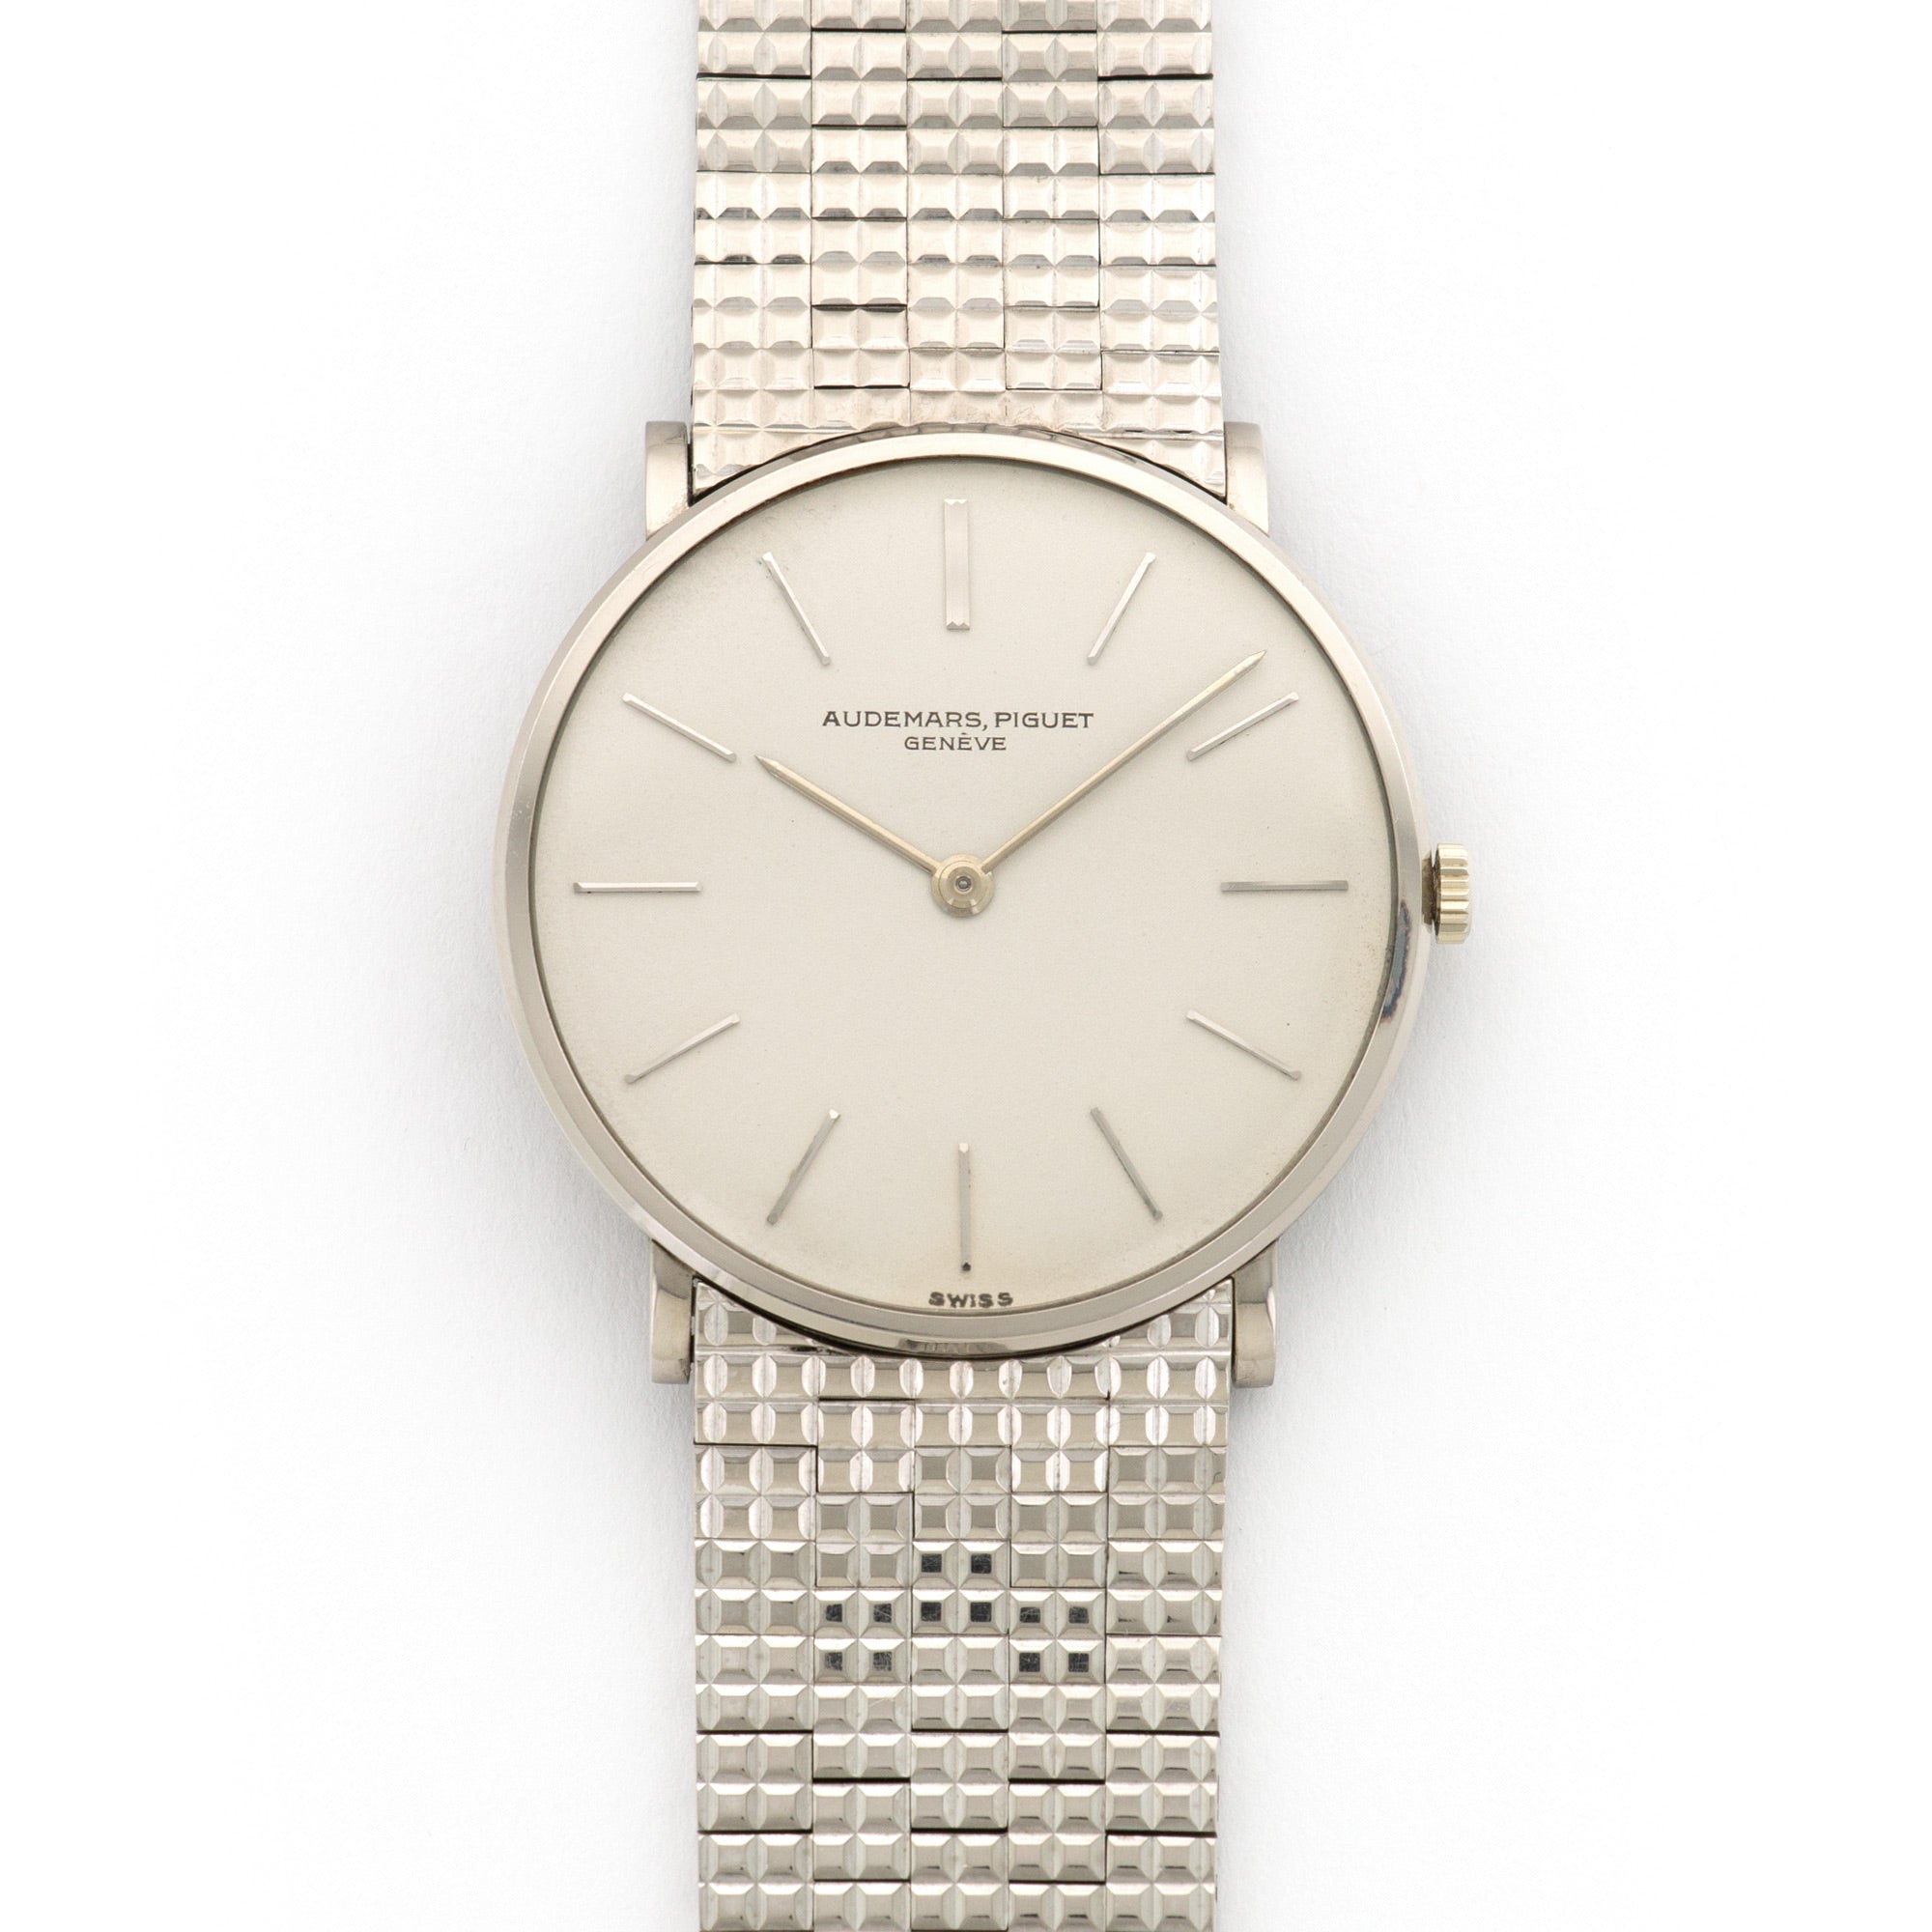 Audemars Piguet - Audemars Piguet White Gold Ultra-Thin Bracelet Watch - The Keystone Watches